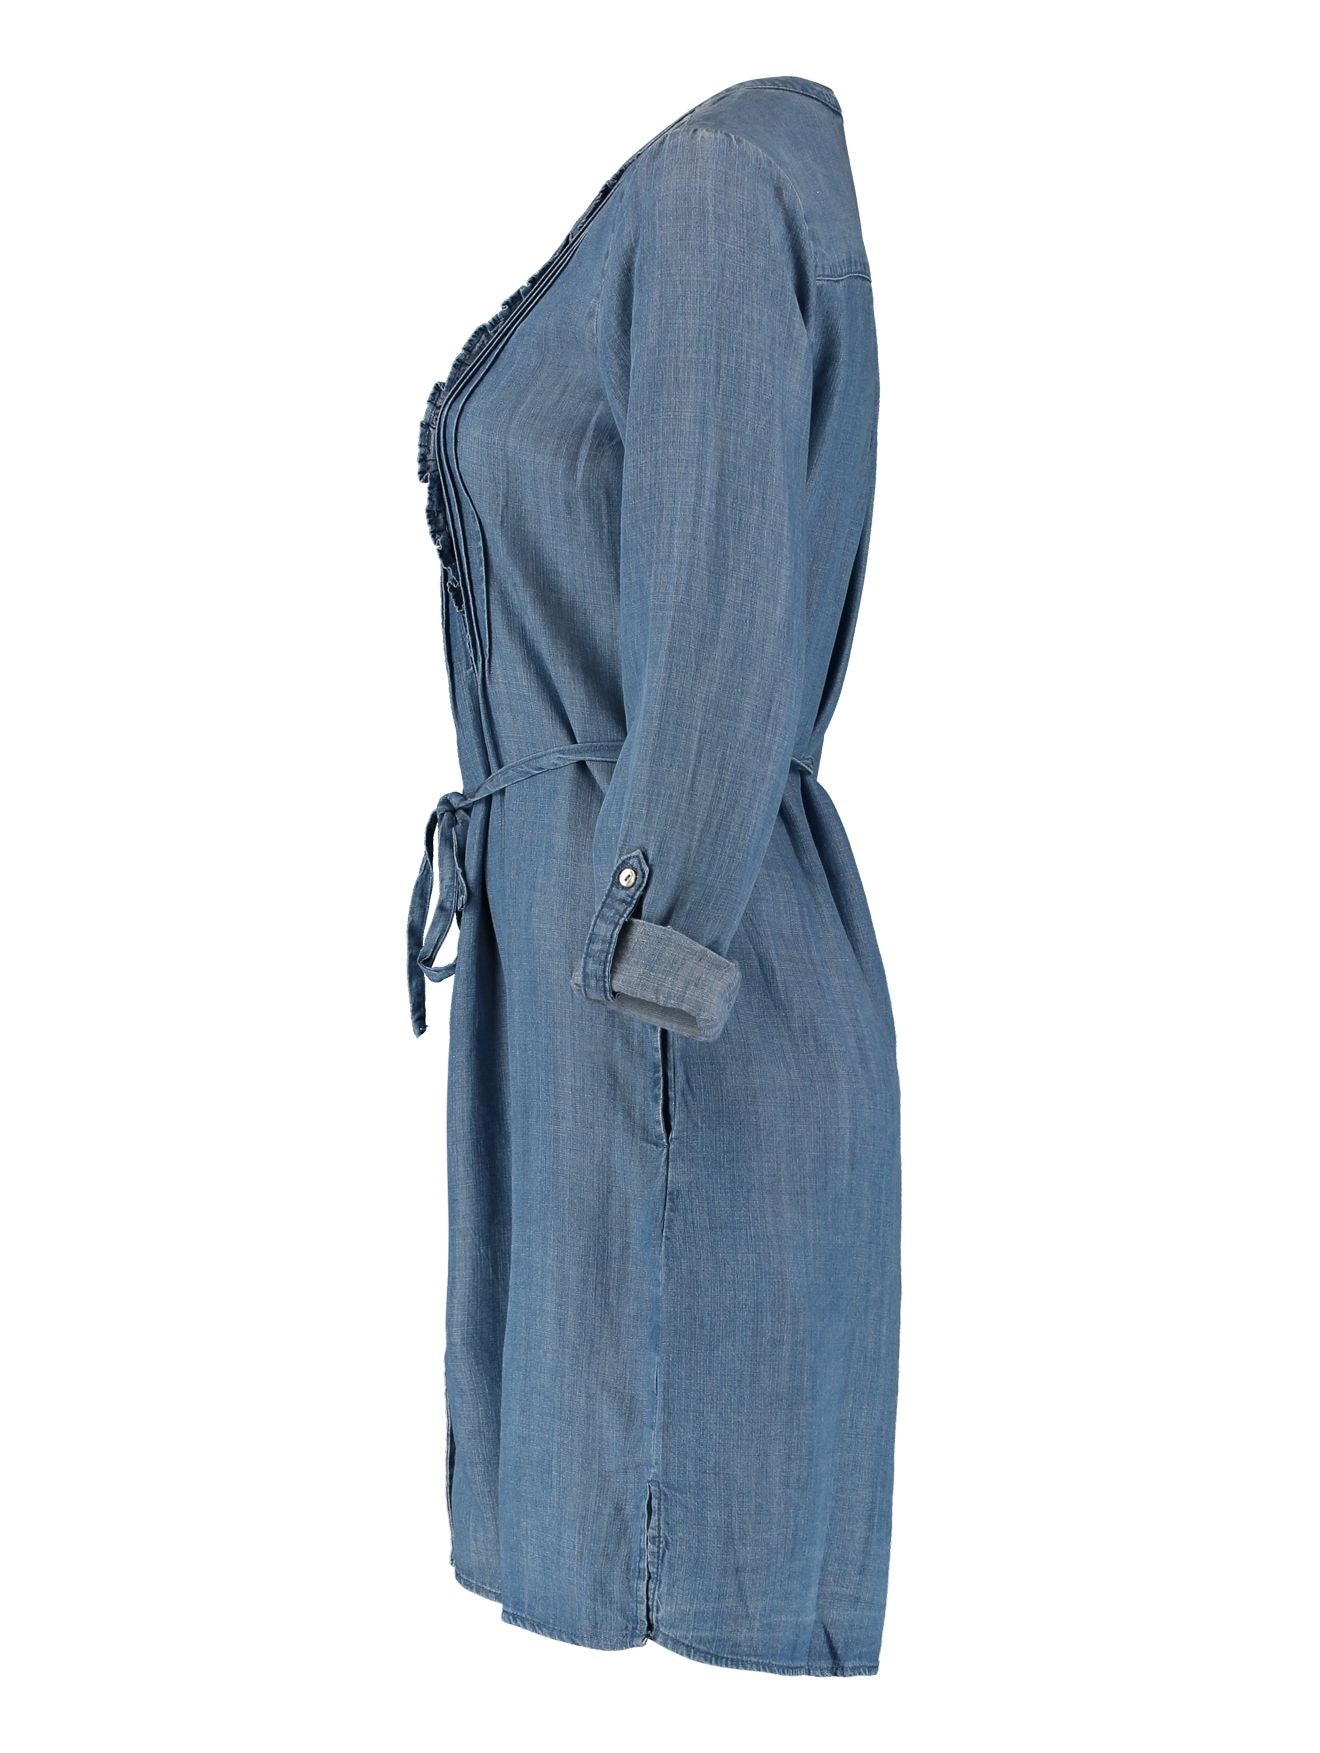 ♕ ZABAIONE Jeanskleid »Dress Pe44rlette« versandkostenfrei kaufen